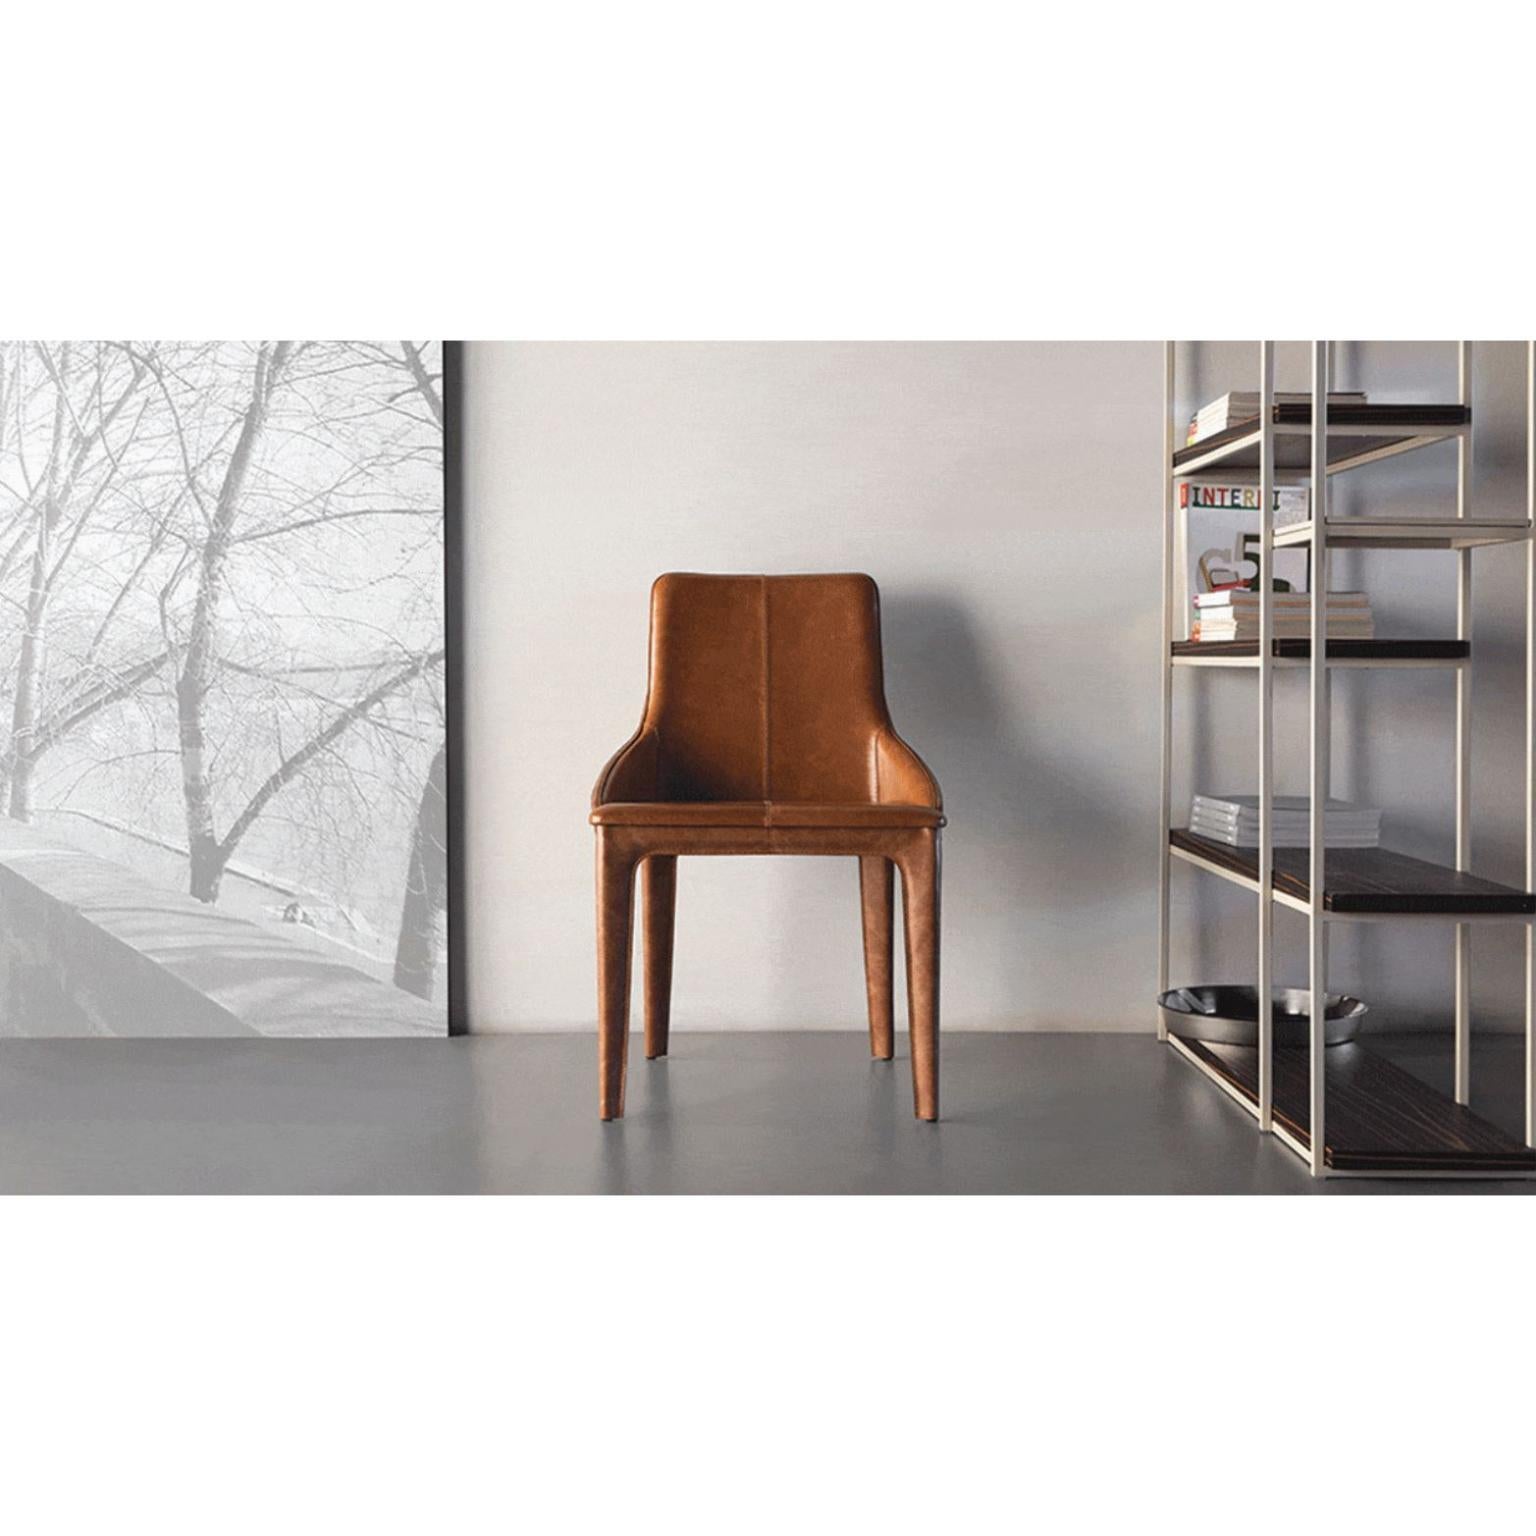 Ola-Stuhl von Doimo Brasil
Abmessungen: B 55 x T 57 x H 83 cm 
MATERIALIEN: Metall, Sitz gepolstert. 


Mit der Absicht, guten Geschmack und Persönlichkeit zu vermitteln, entschlüsselt Doimo Trends und folgt der Entwicklung des Menschen und seines